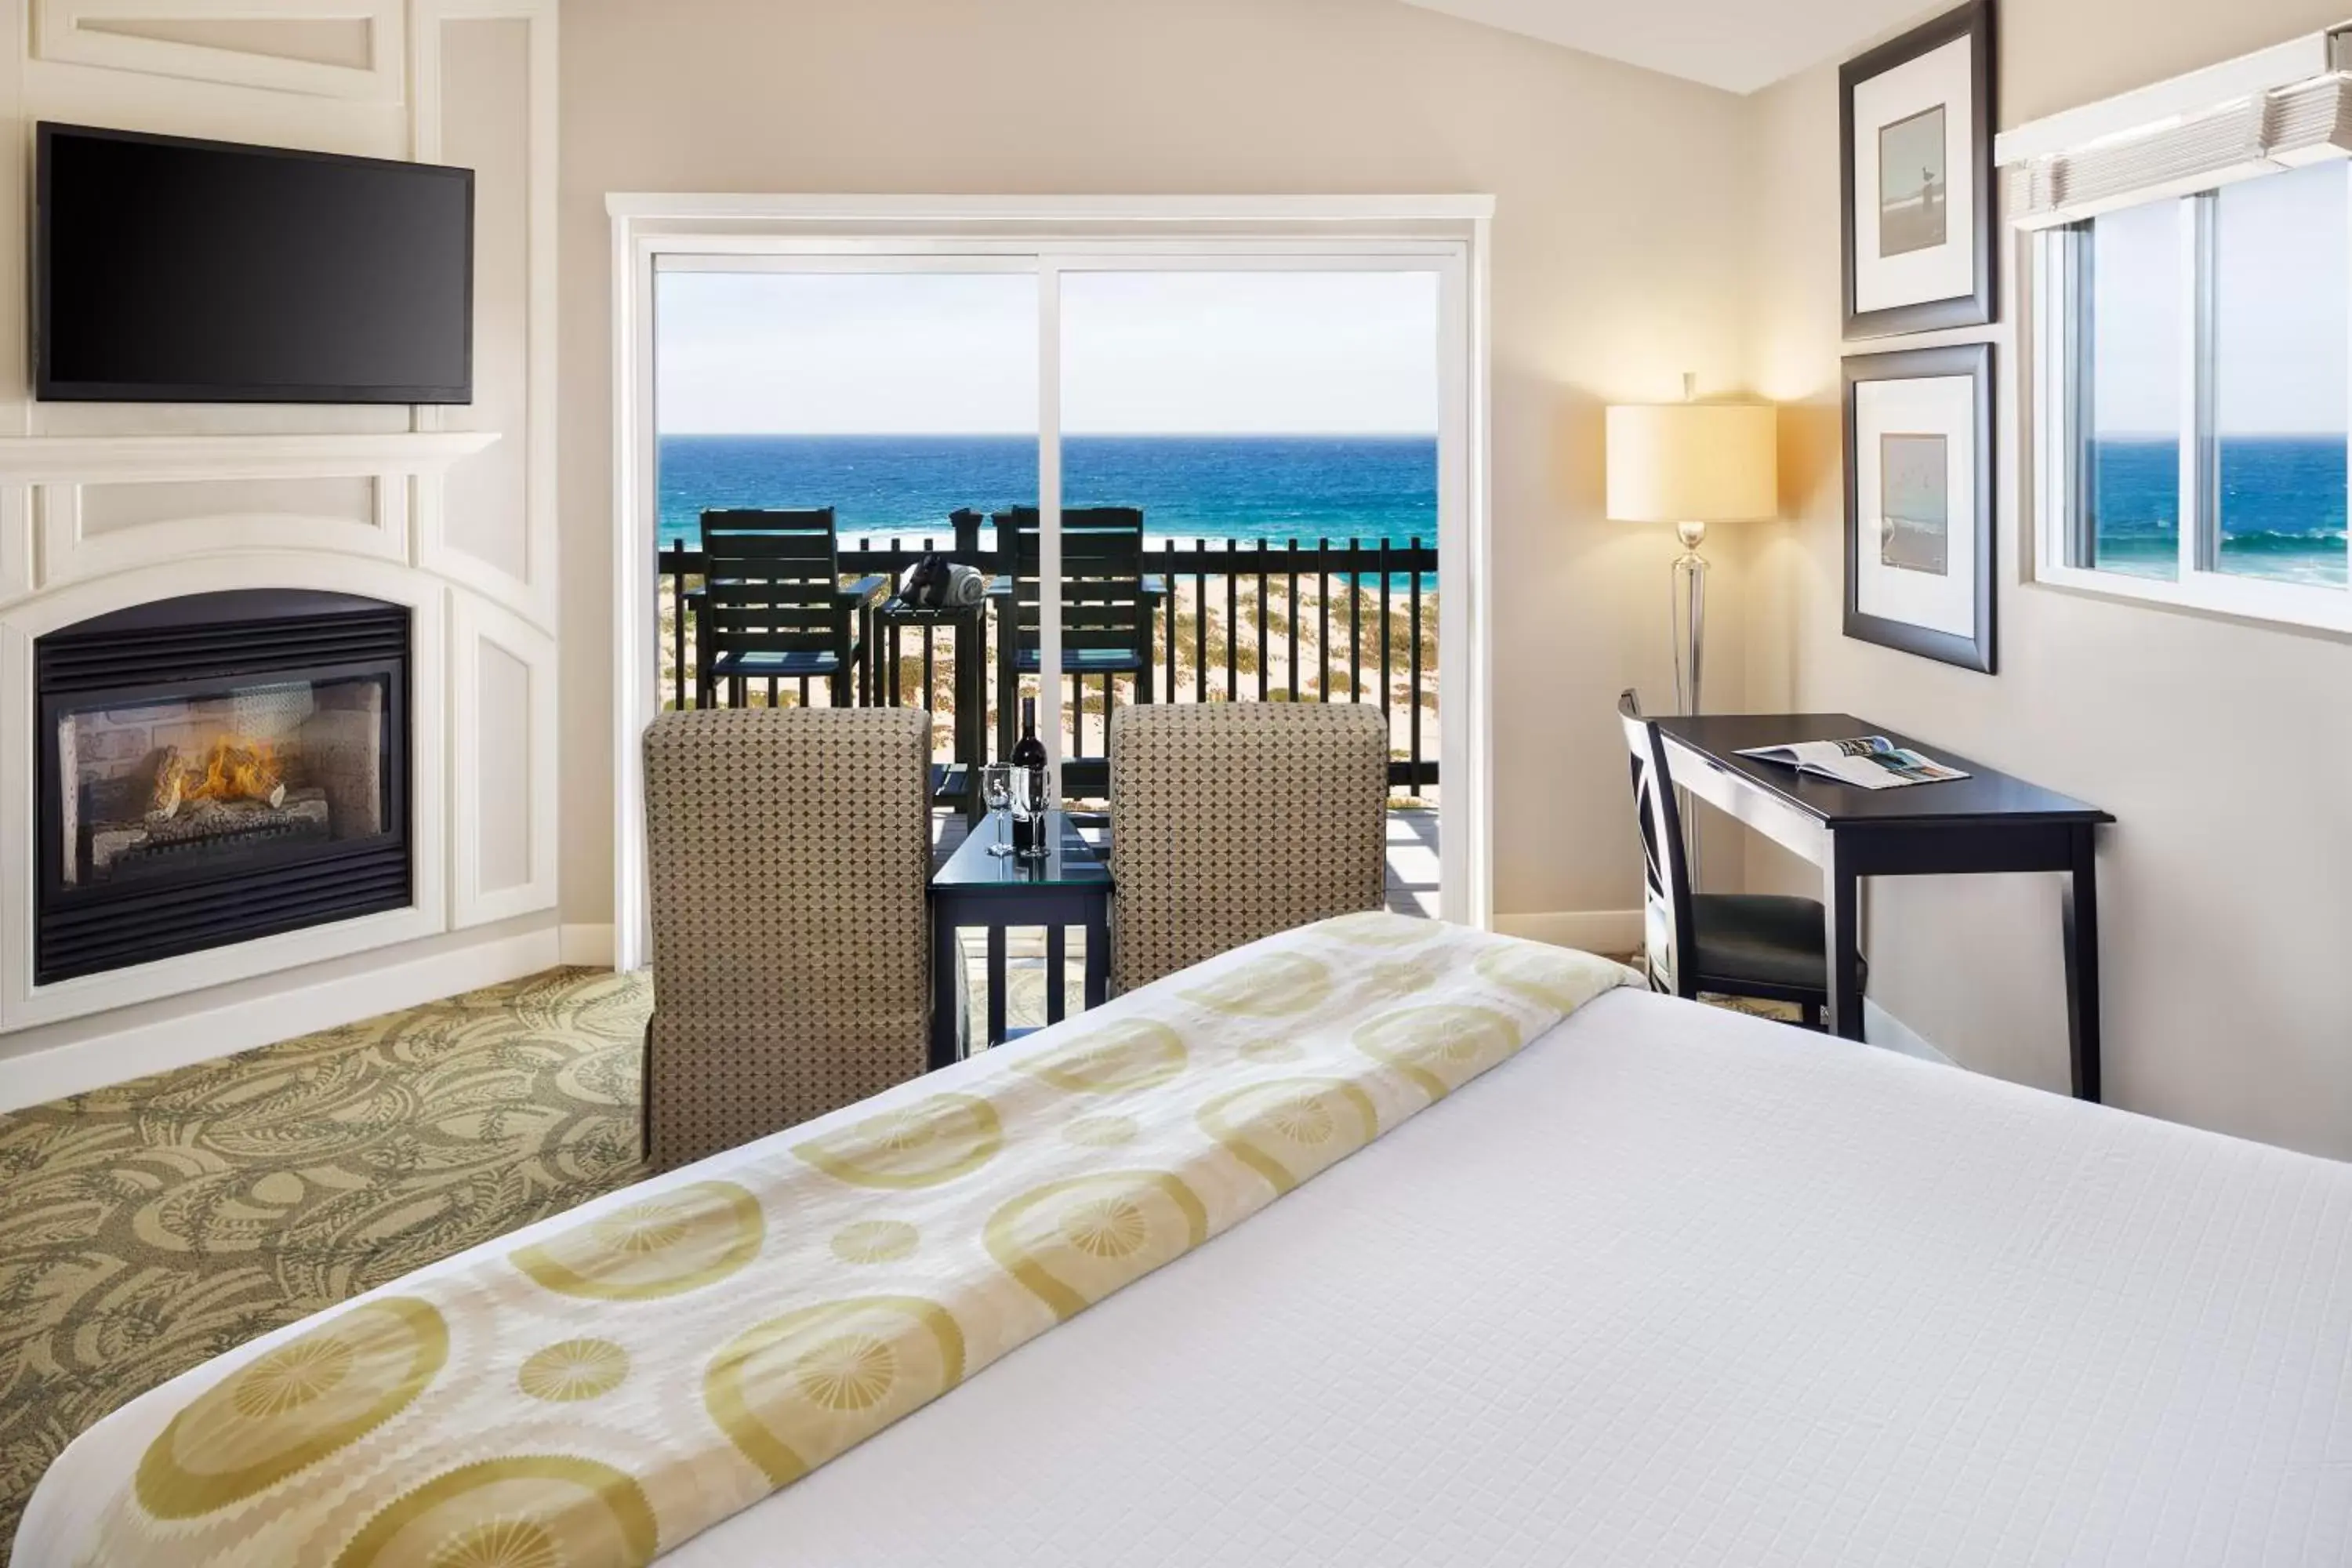 Bedroom, Room Photo in Sanctuary Beach Resort